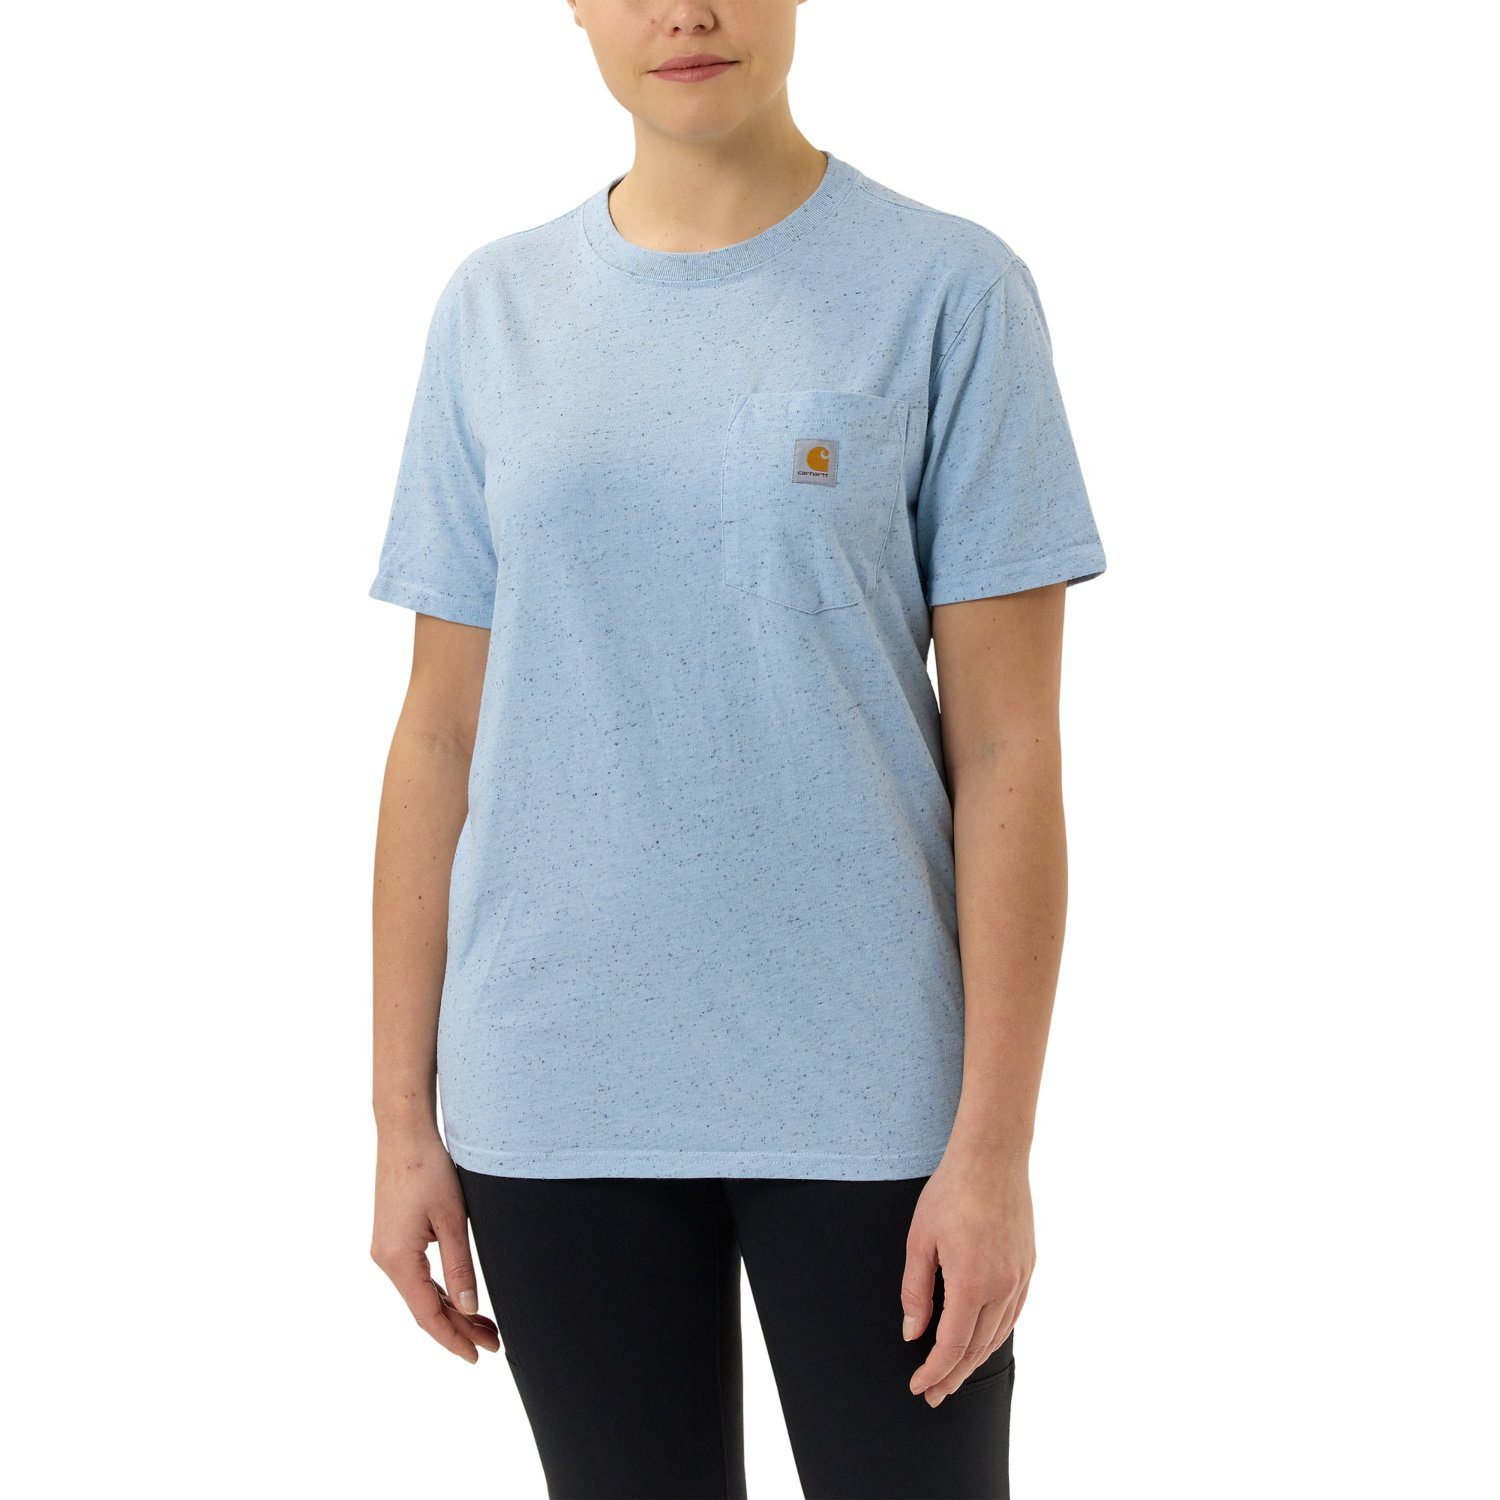 Carhartt T-Shirt Carhartt Damen T-Shirt blue Fit Short-Sleeve Pocket Adult Heavyweight nep Loose powder